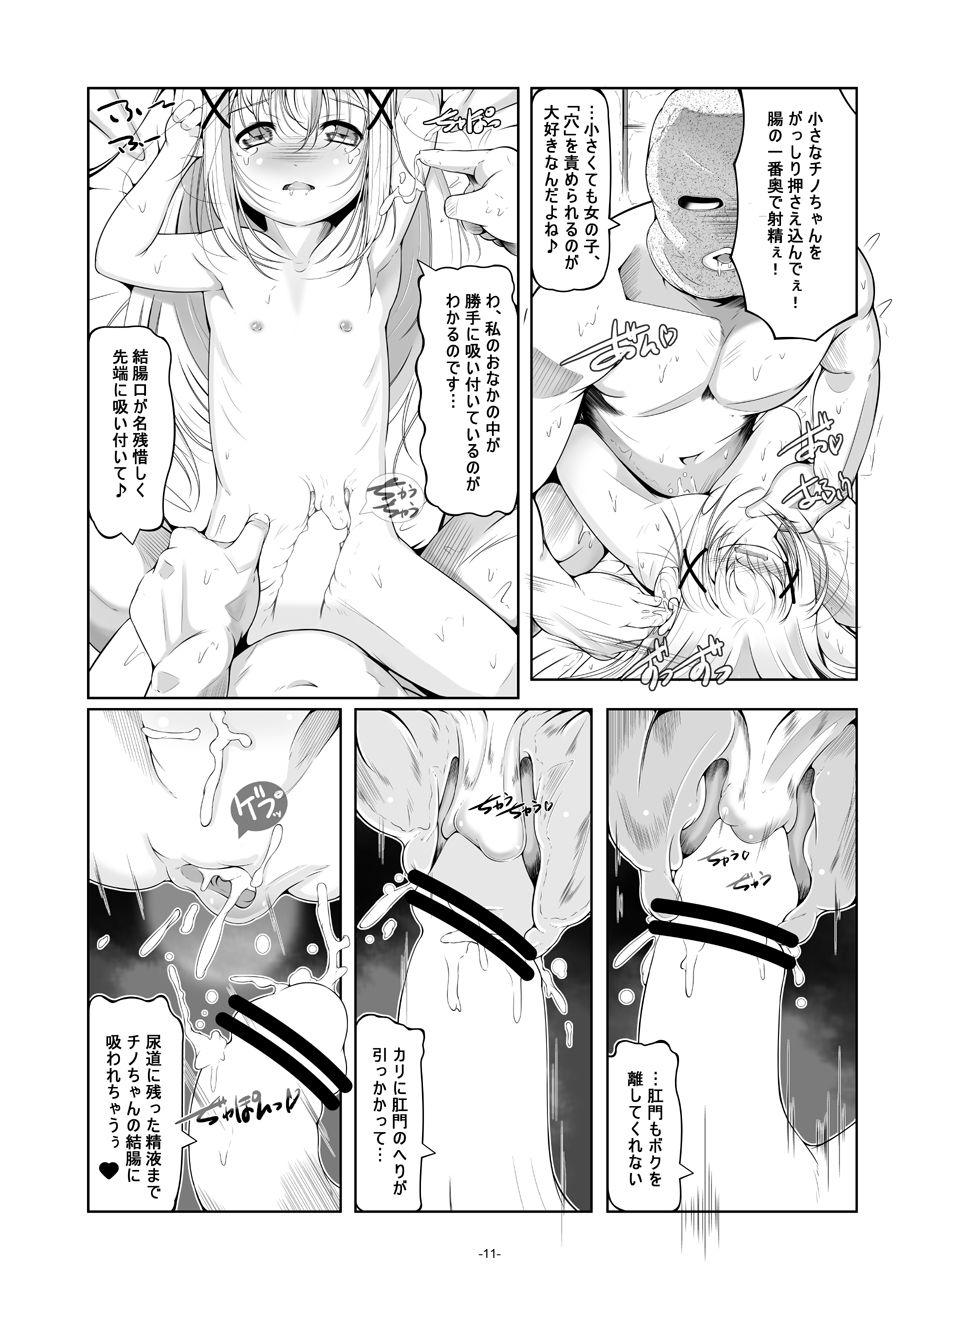 Super Hot Porn Loli Senyou Shoukan Rabbit House - Gochuumon wa usagi desu ka Bunduda - Page 12